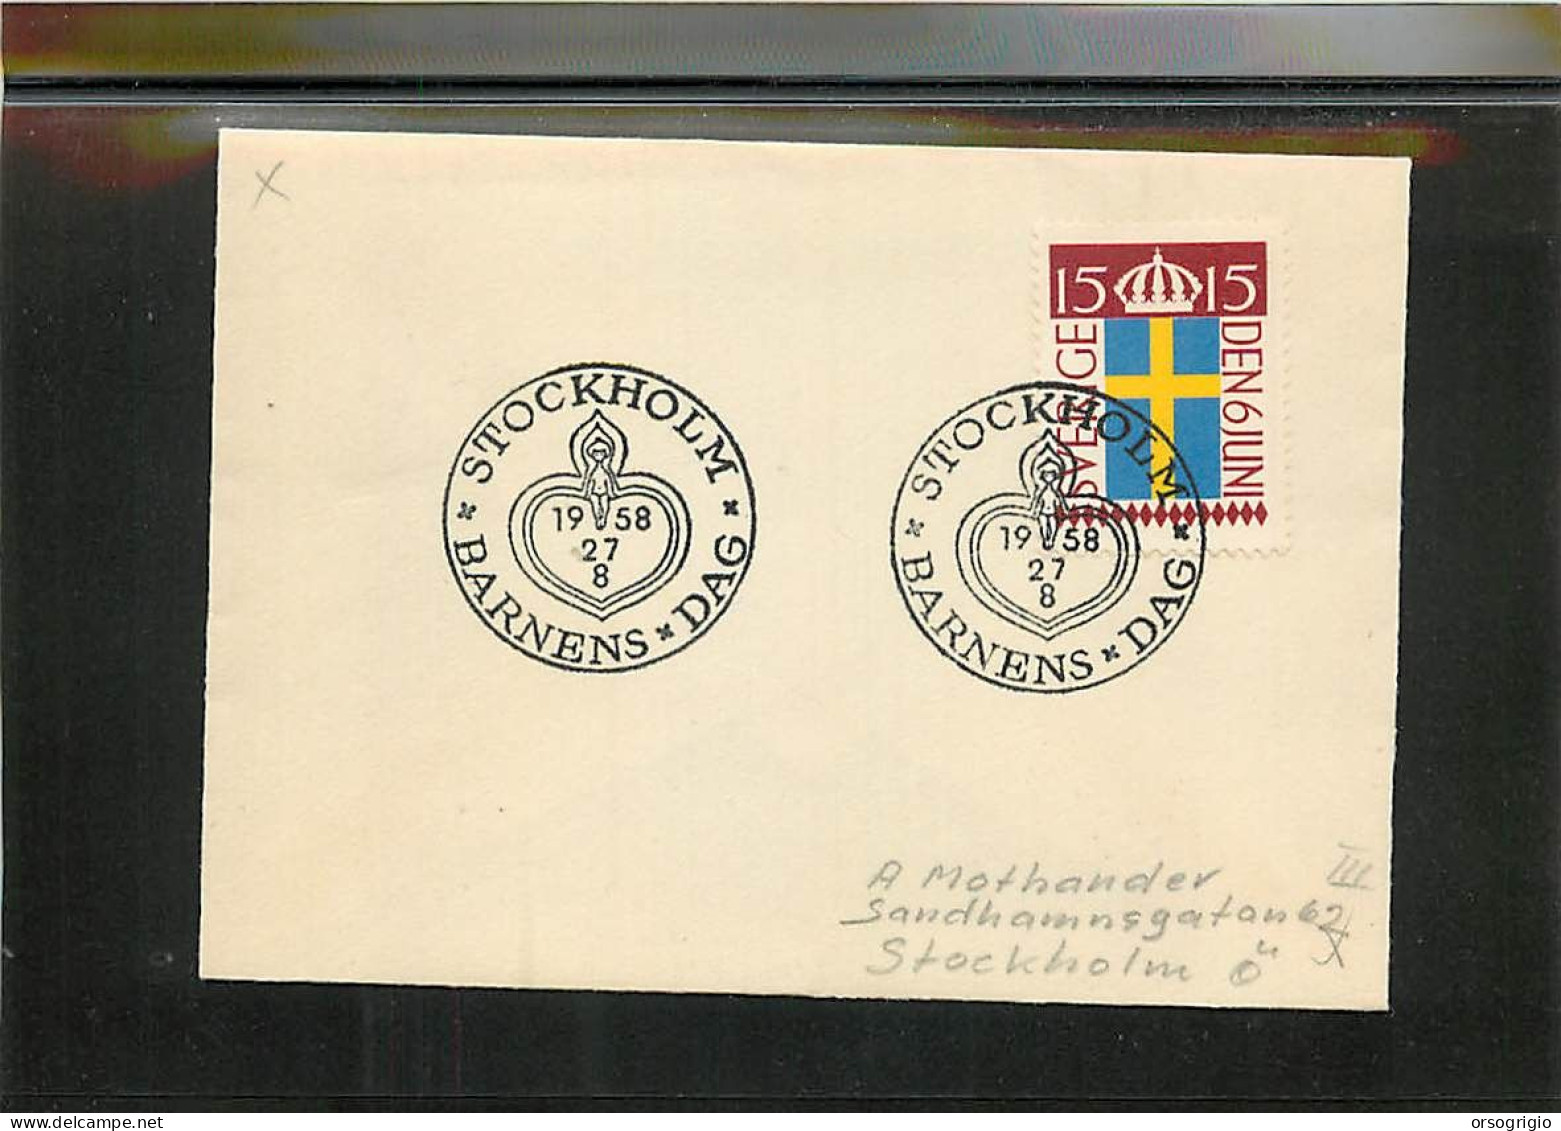 SVEZIA SVERIGE - STOCKHOLM - 1958 - BARNENS DAG - CHILDREN'S DAY - Briefe U. Dokumente